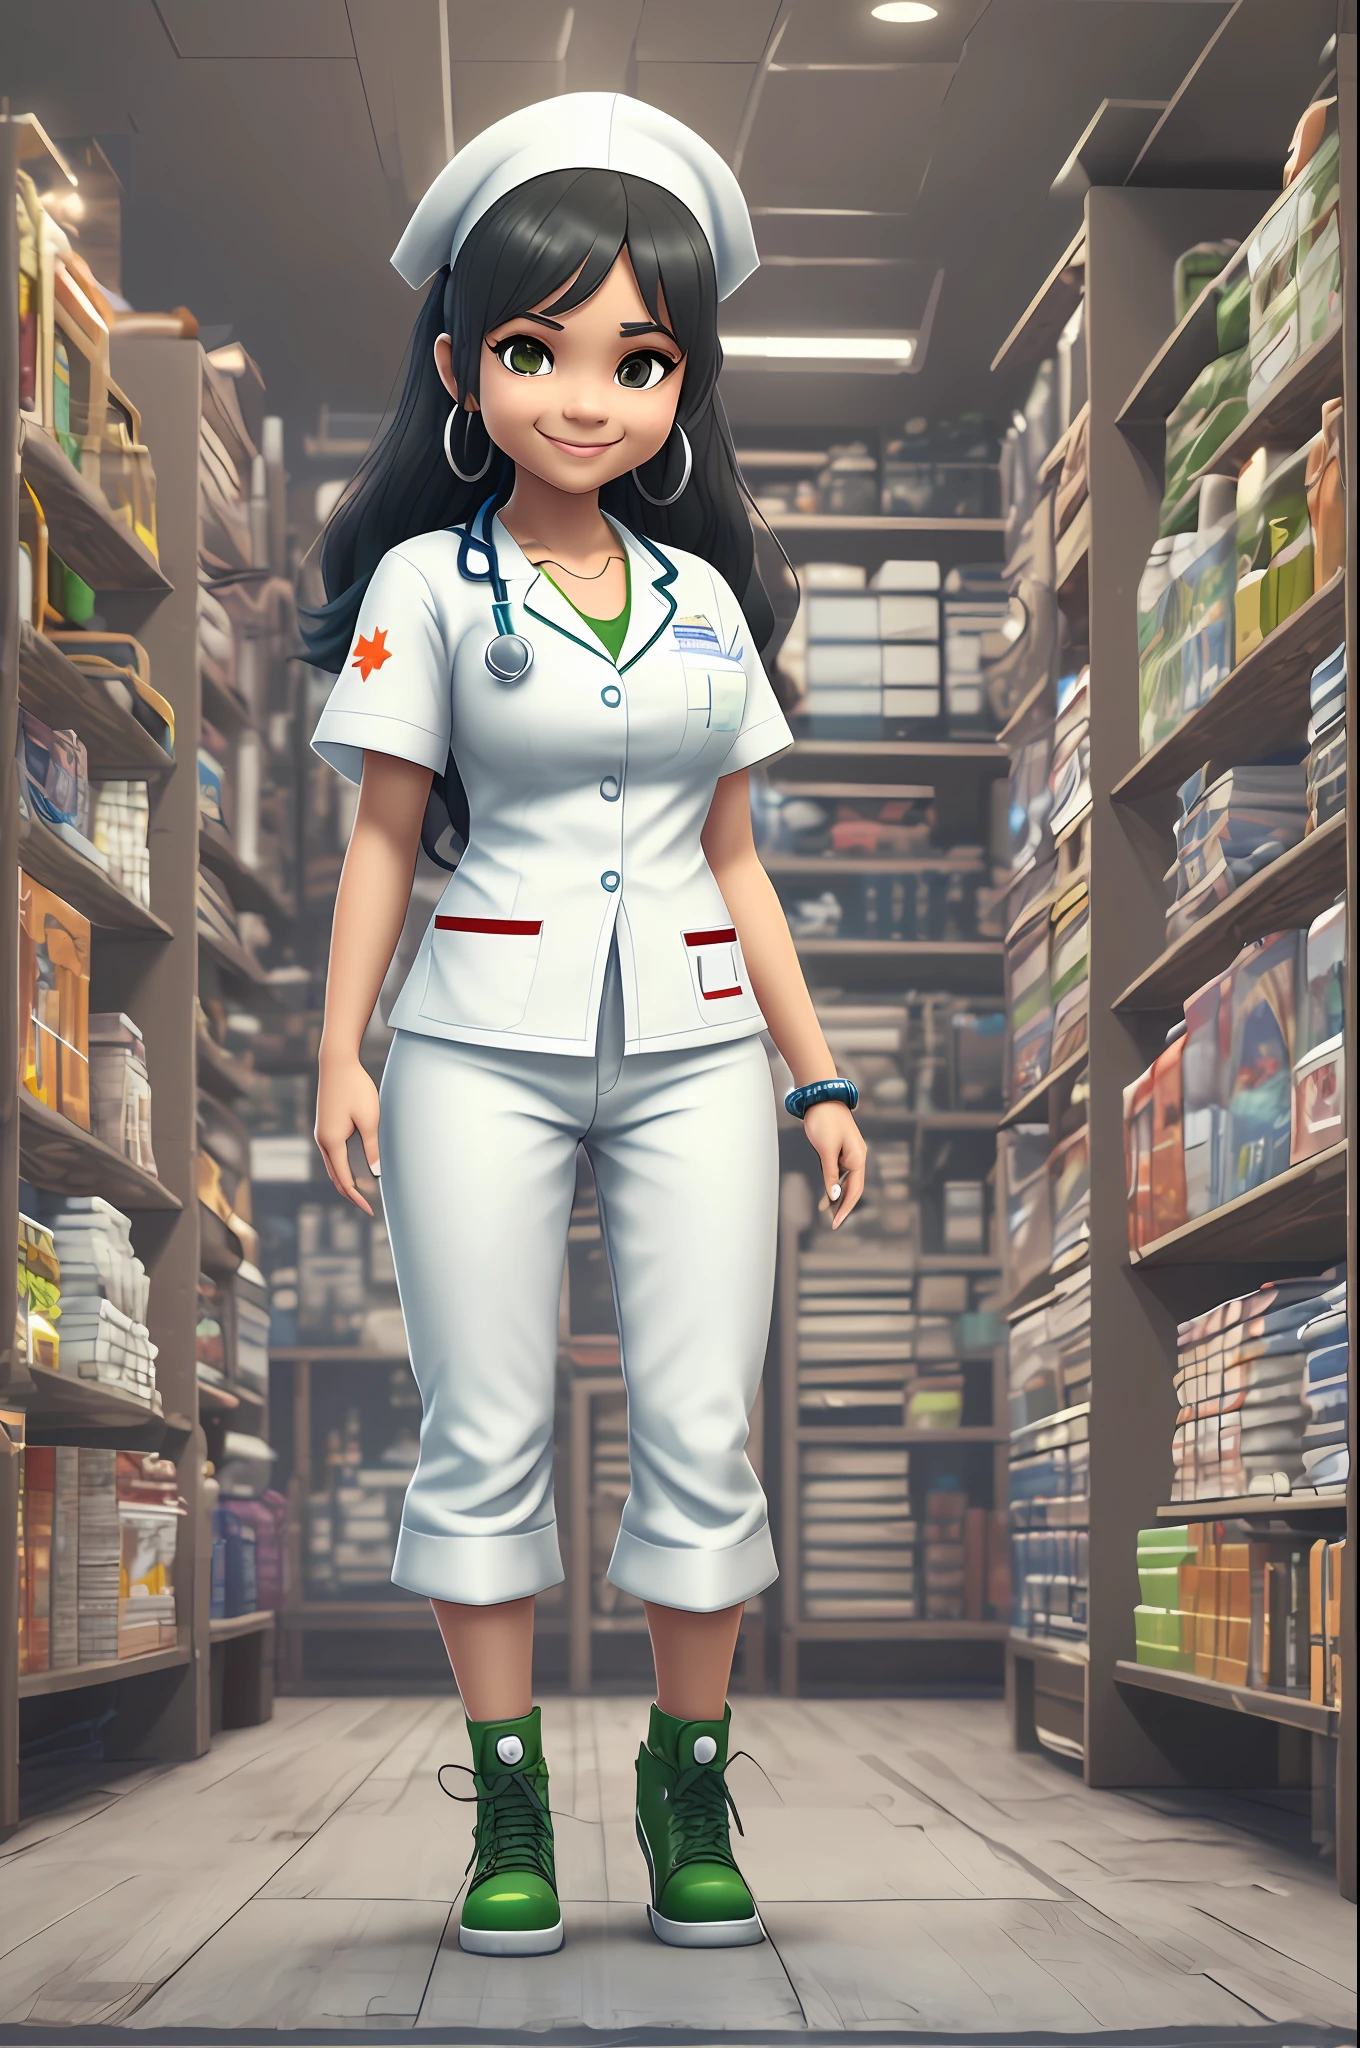 Ein 3D-Bild einer Ganzkörper-Mulattin-Krankenschwester, aufstehen, mit weißer Hose süßes lächelndes Gesicht, braune Augen, langes schwarzes Haar, trägt eine weiße Krankenschwesteruniform mit kleinen grünen und blauen Akzenten im Chibi- und Disney-Stil, Kein Hintergrund, ausführlich, Ultrahochauflösend, 8K, im Stil von Quixel Megascans, 3D Scan Store und Epic Games